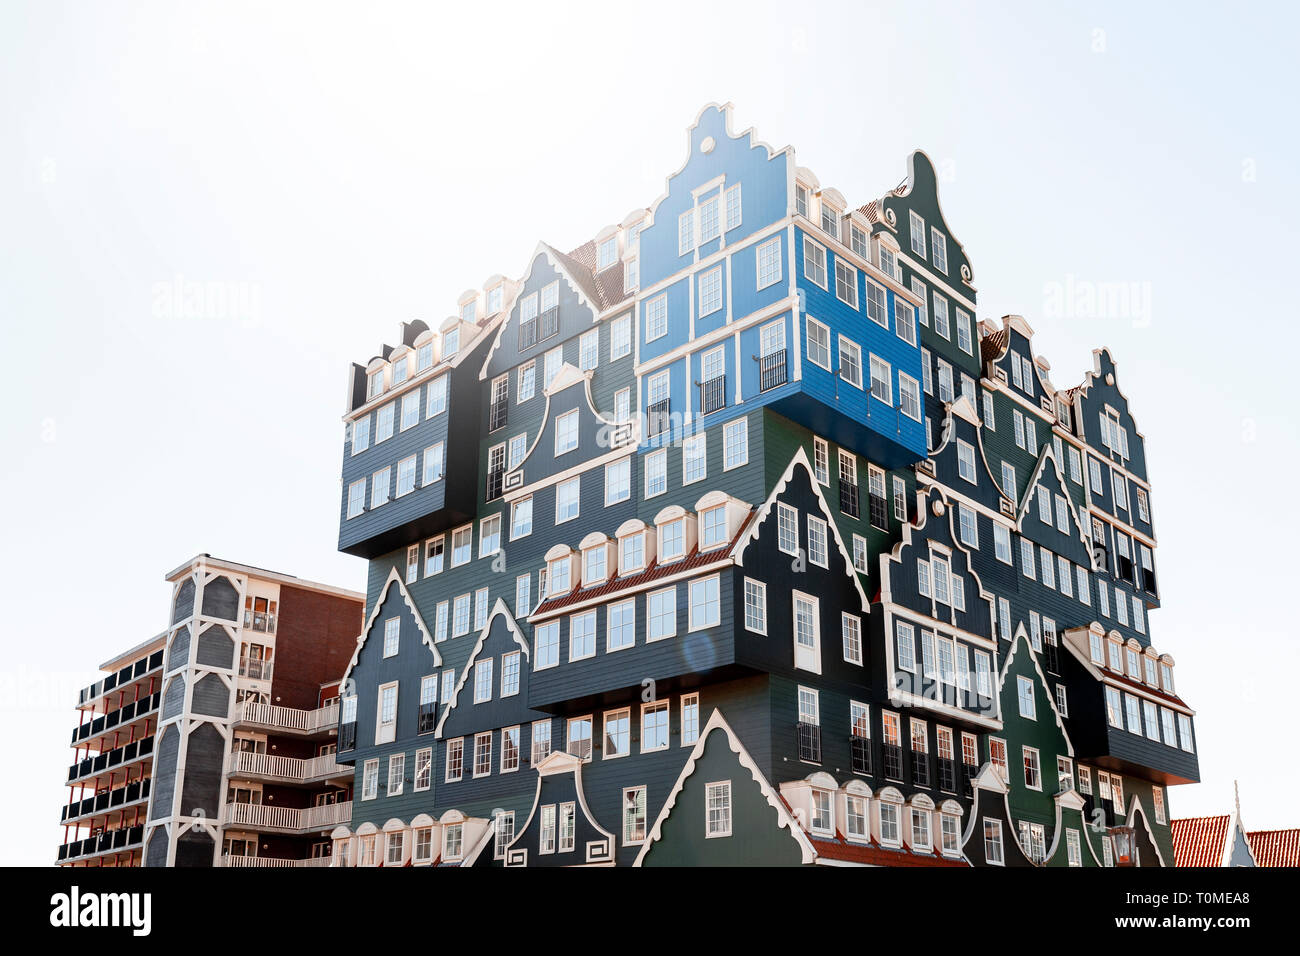 Hotel Mit Aussergewohnlicher Architektur In Zaandam In Der Nahe Von Amsterdam Niederlande Stockfotografie Alamy